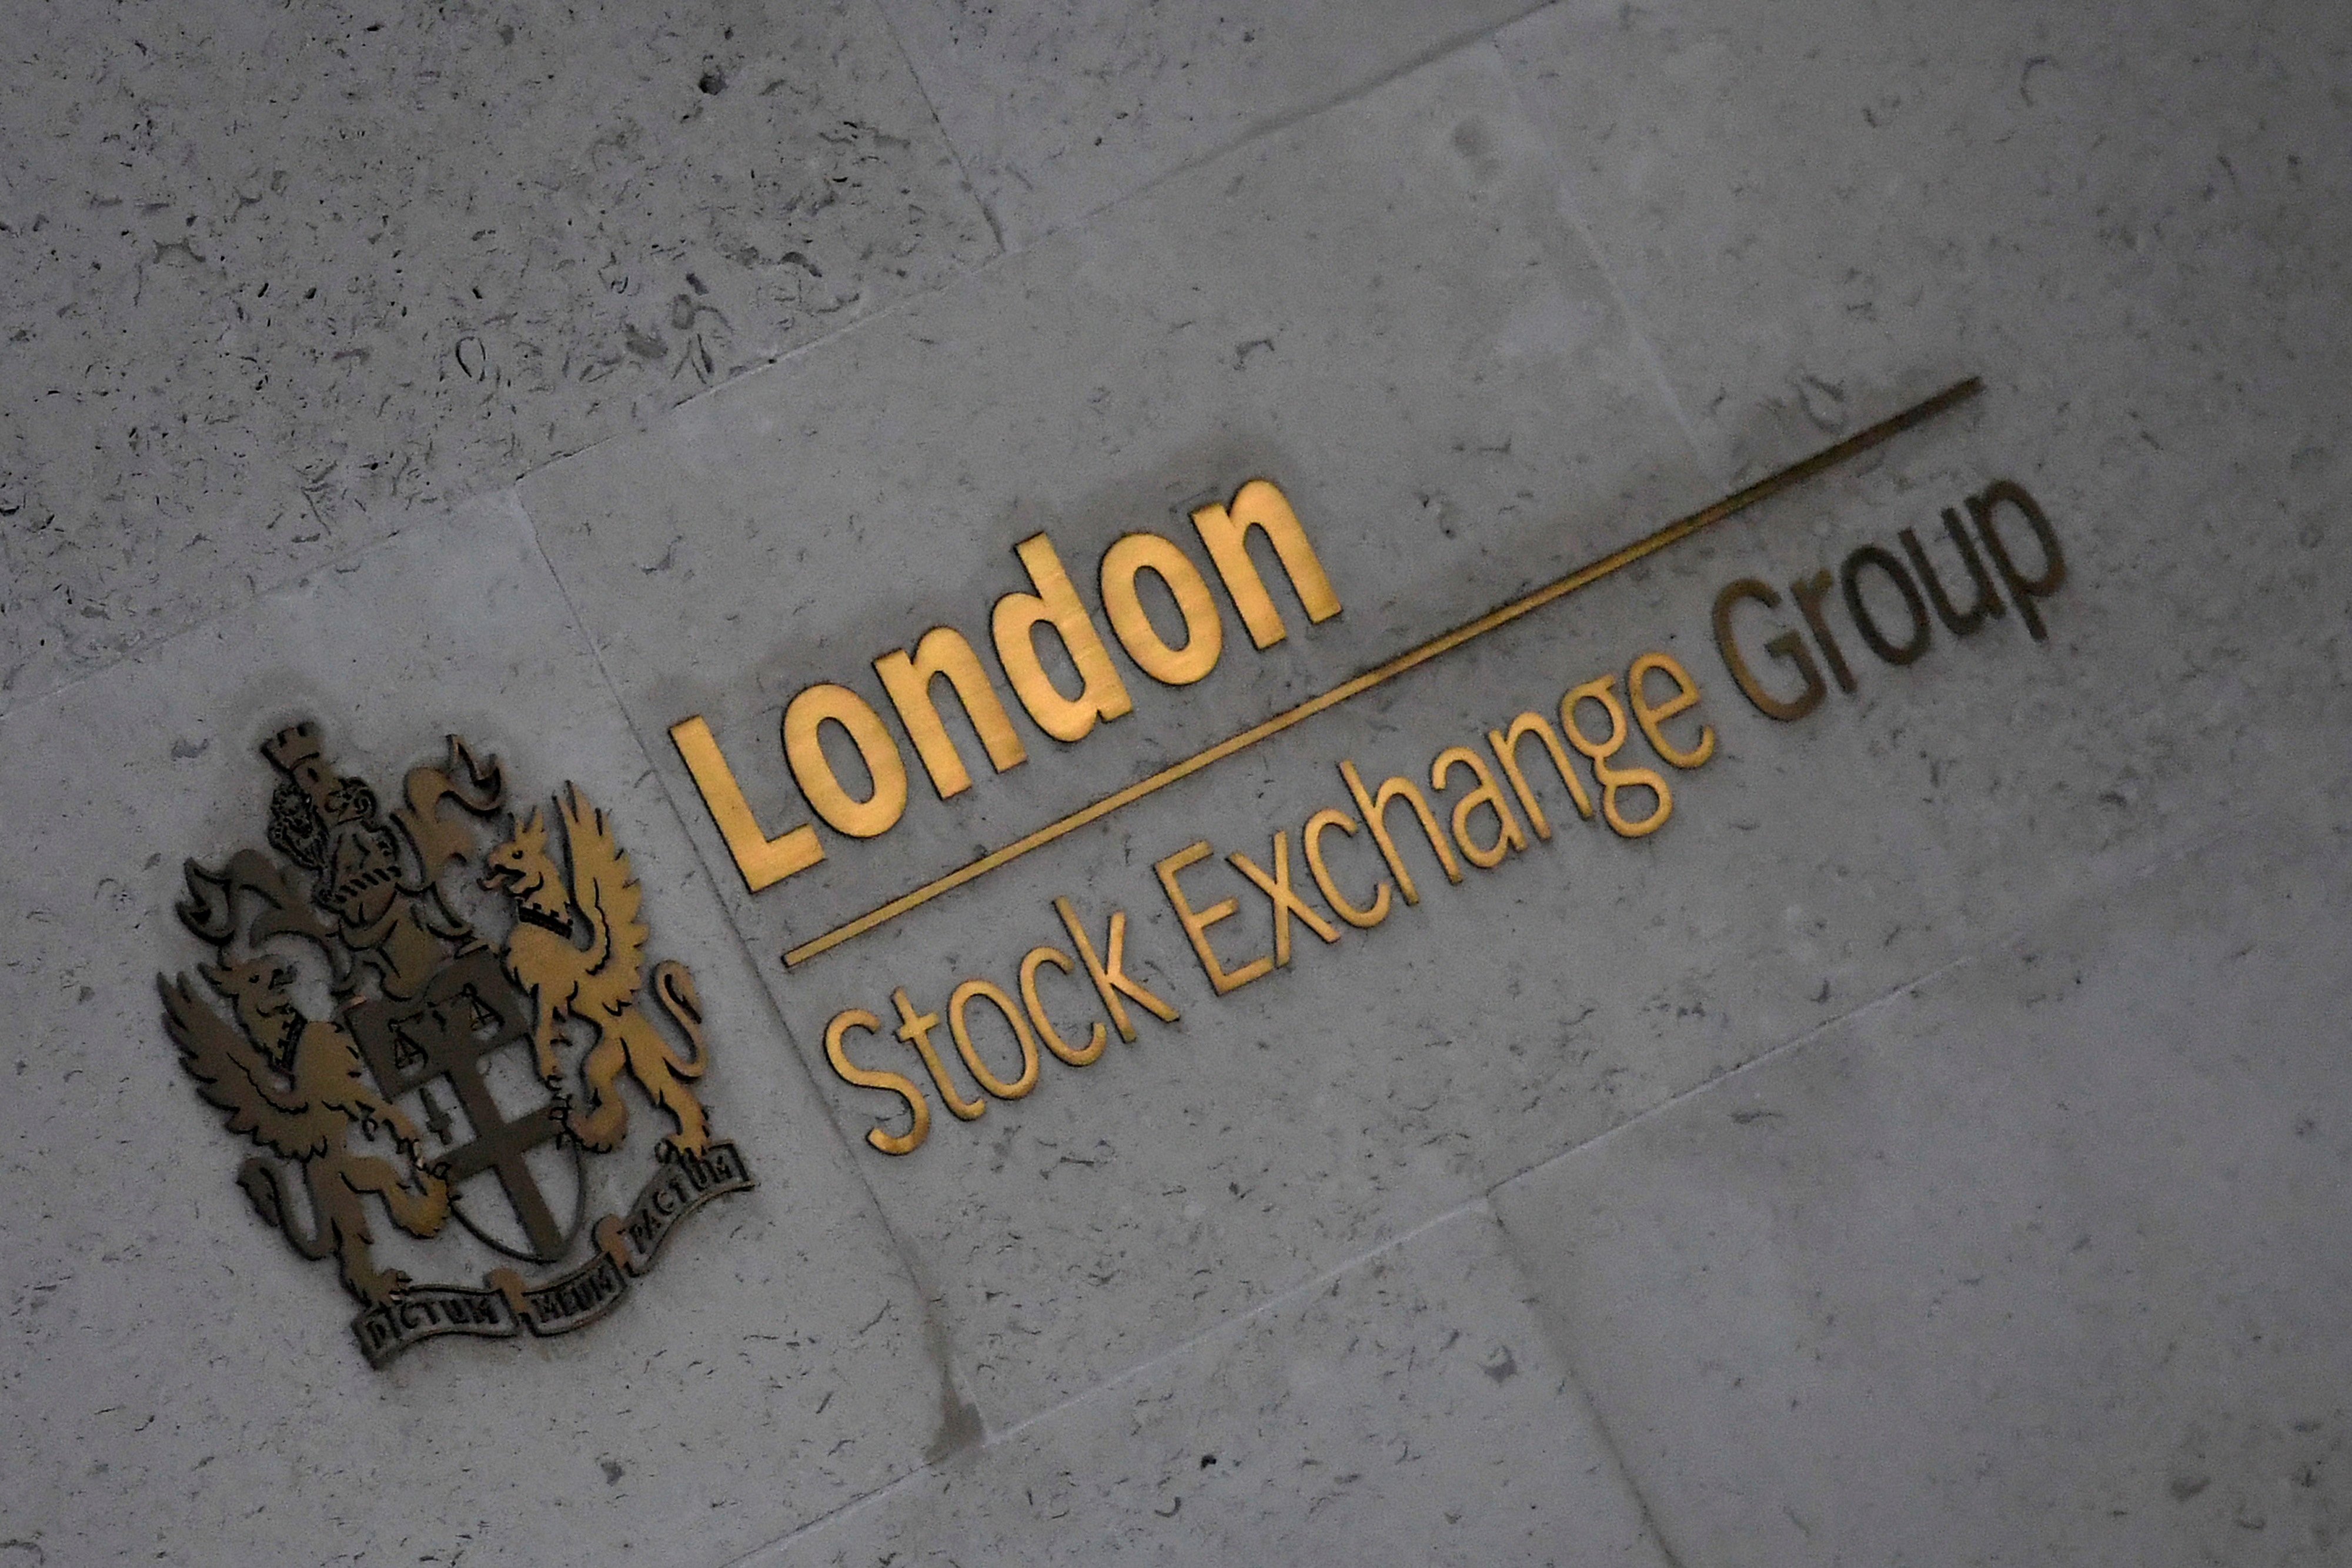 London Stock Exchange sale: Americans gatecrash Deutsche Börse takeover, The Independent